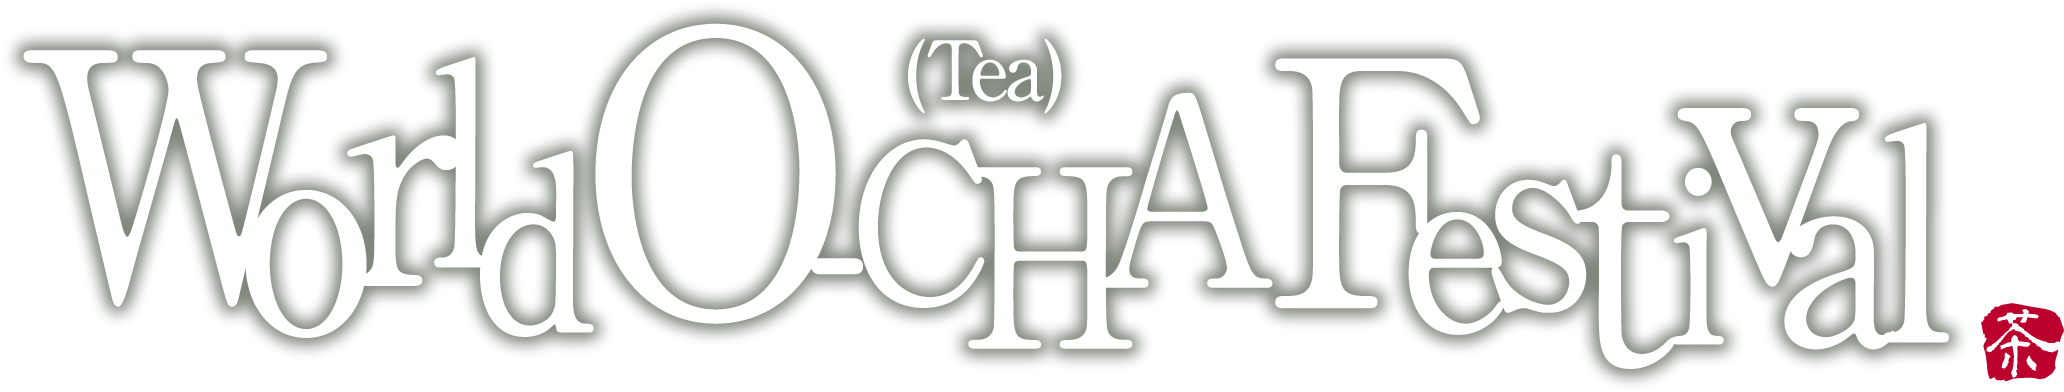 World O-CHA (Tea) Festival